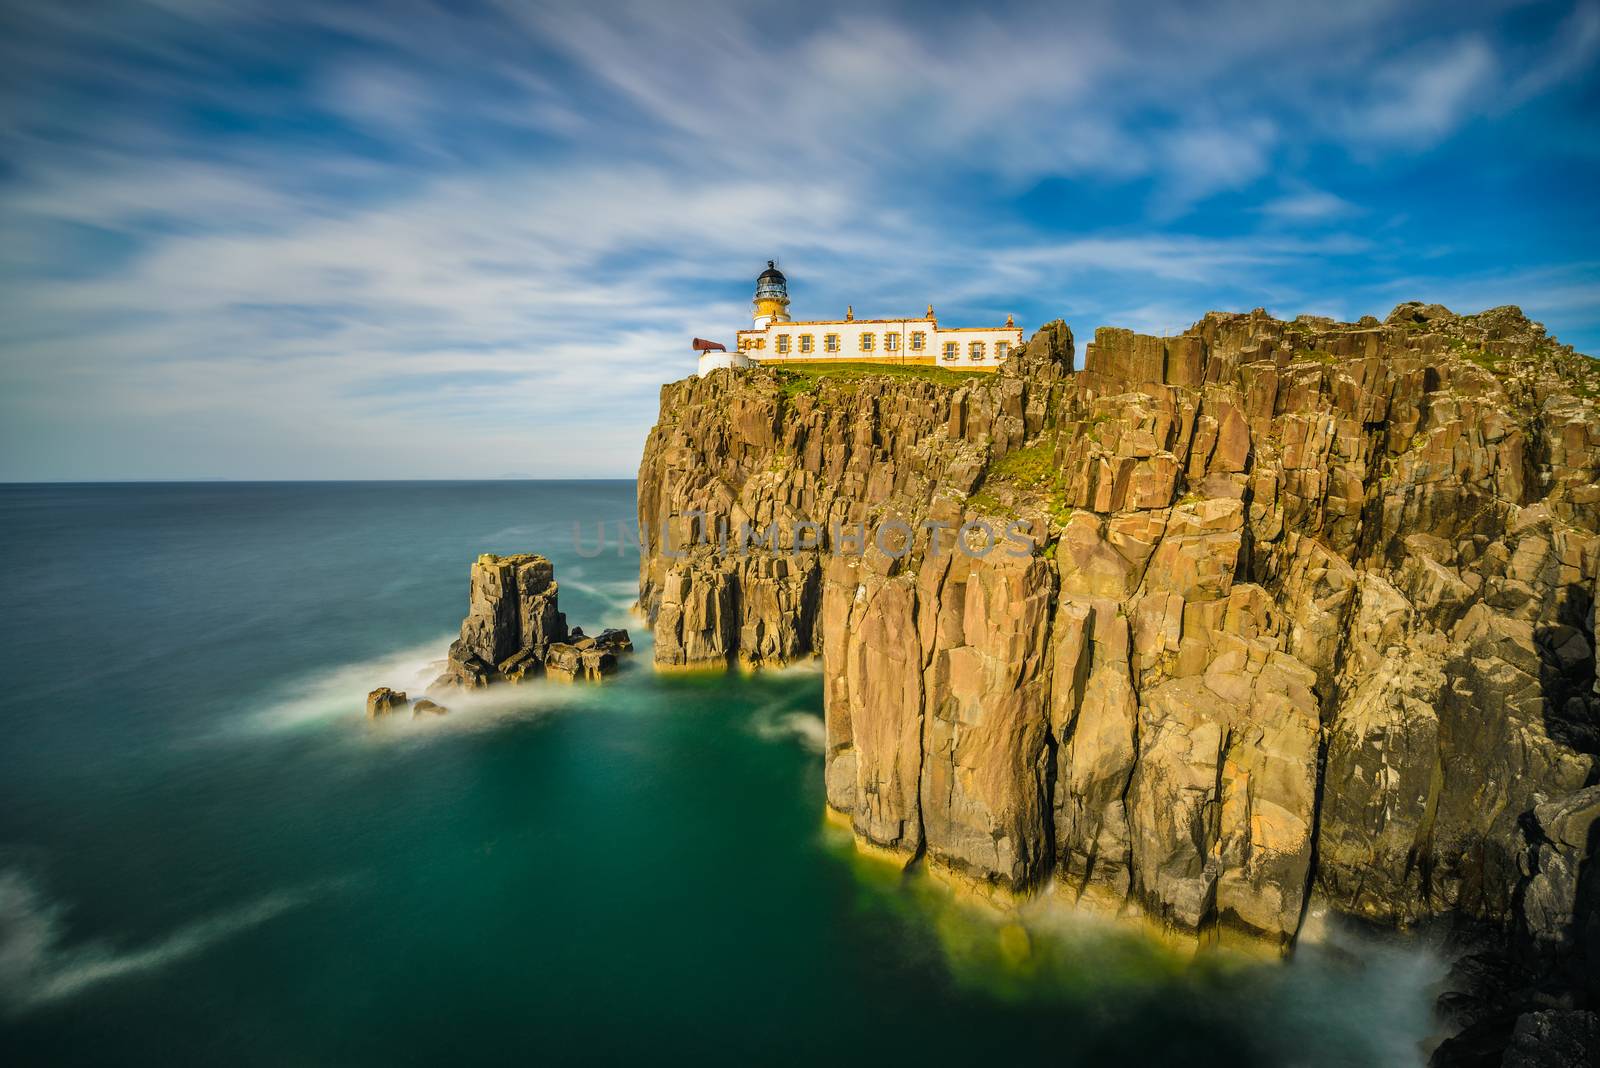 Neist Point lighthouse at Isle of Skye, Scottish highlands, United Kingdom. Long exposure